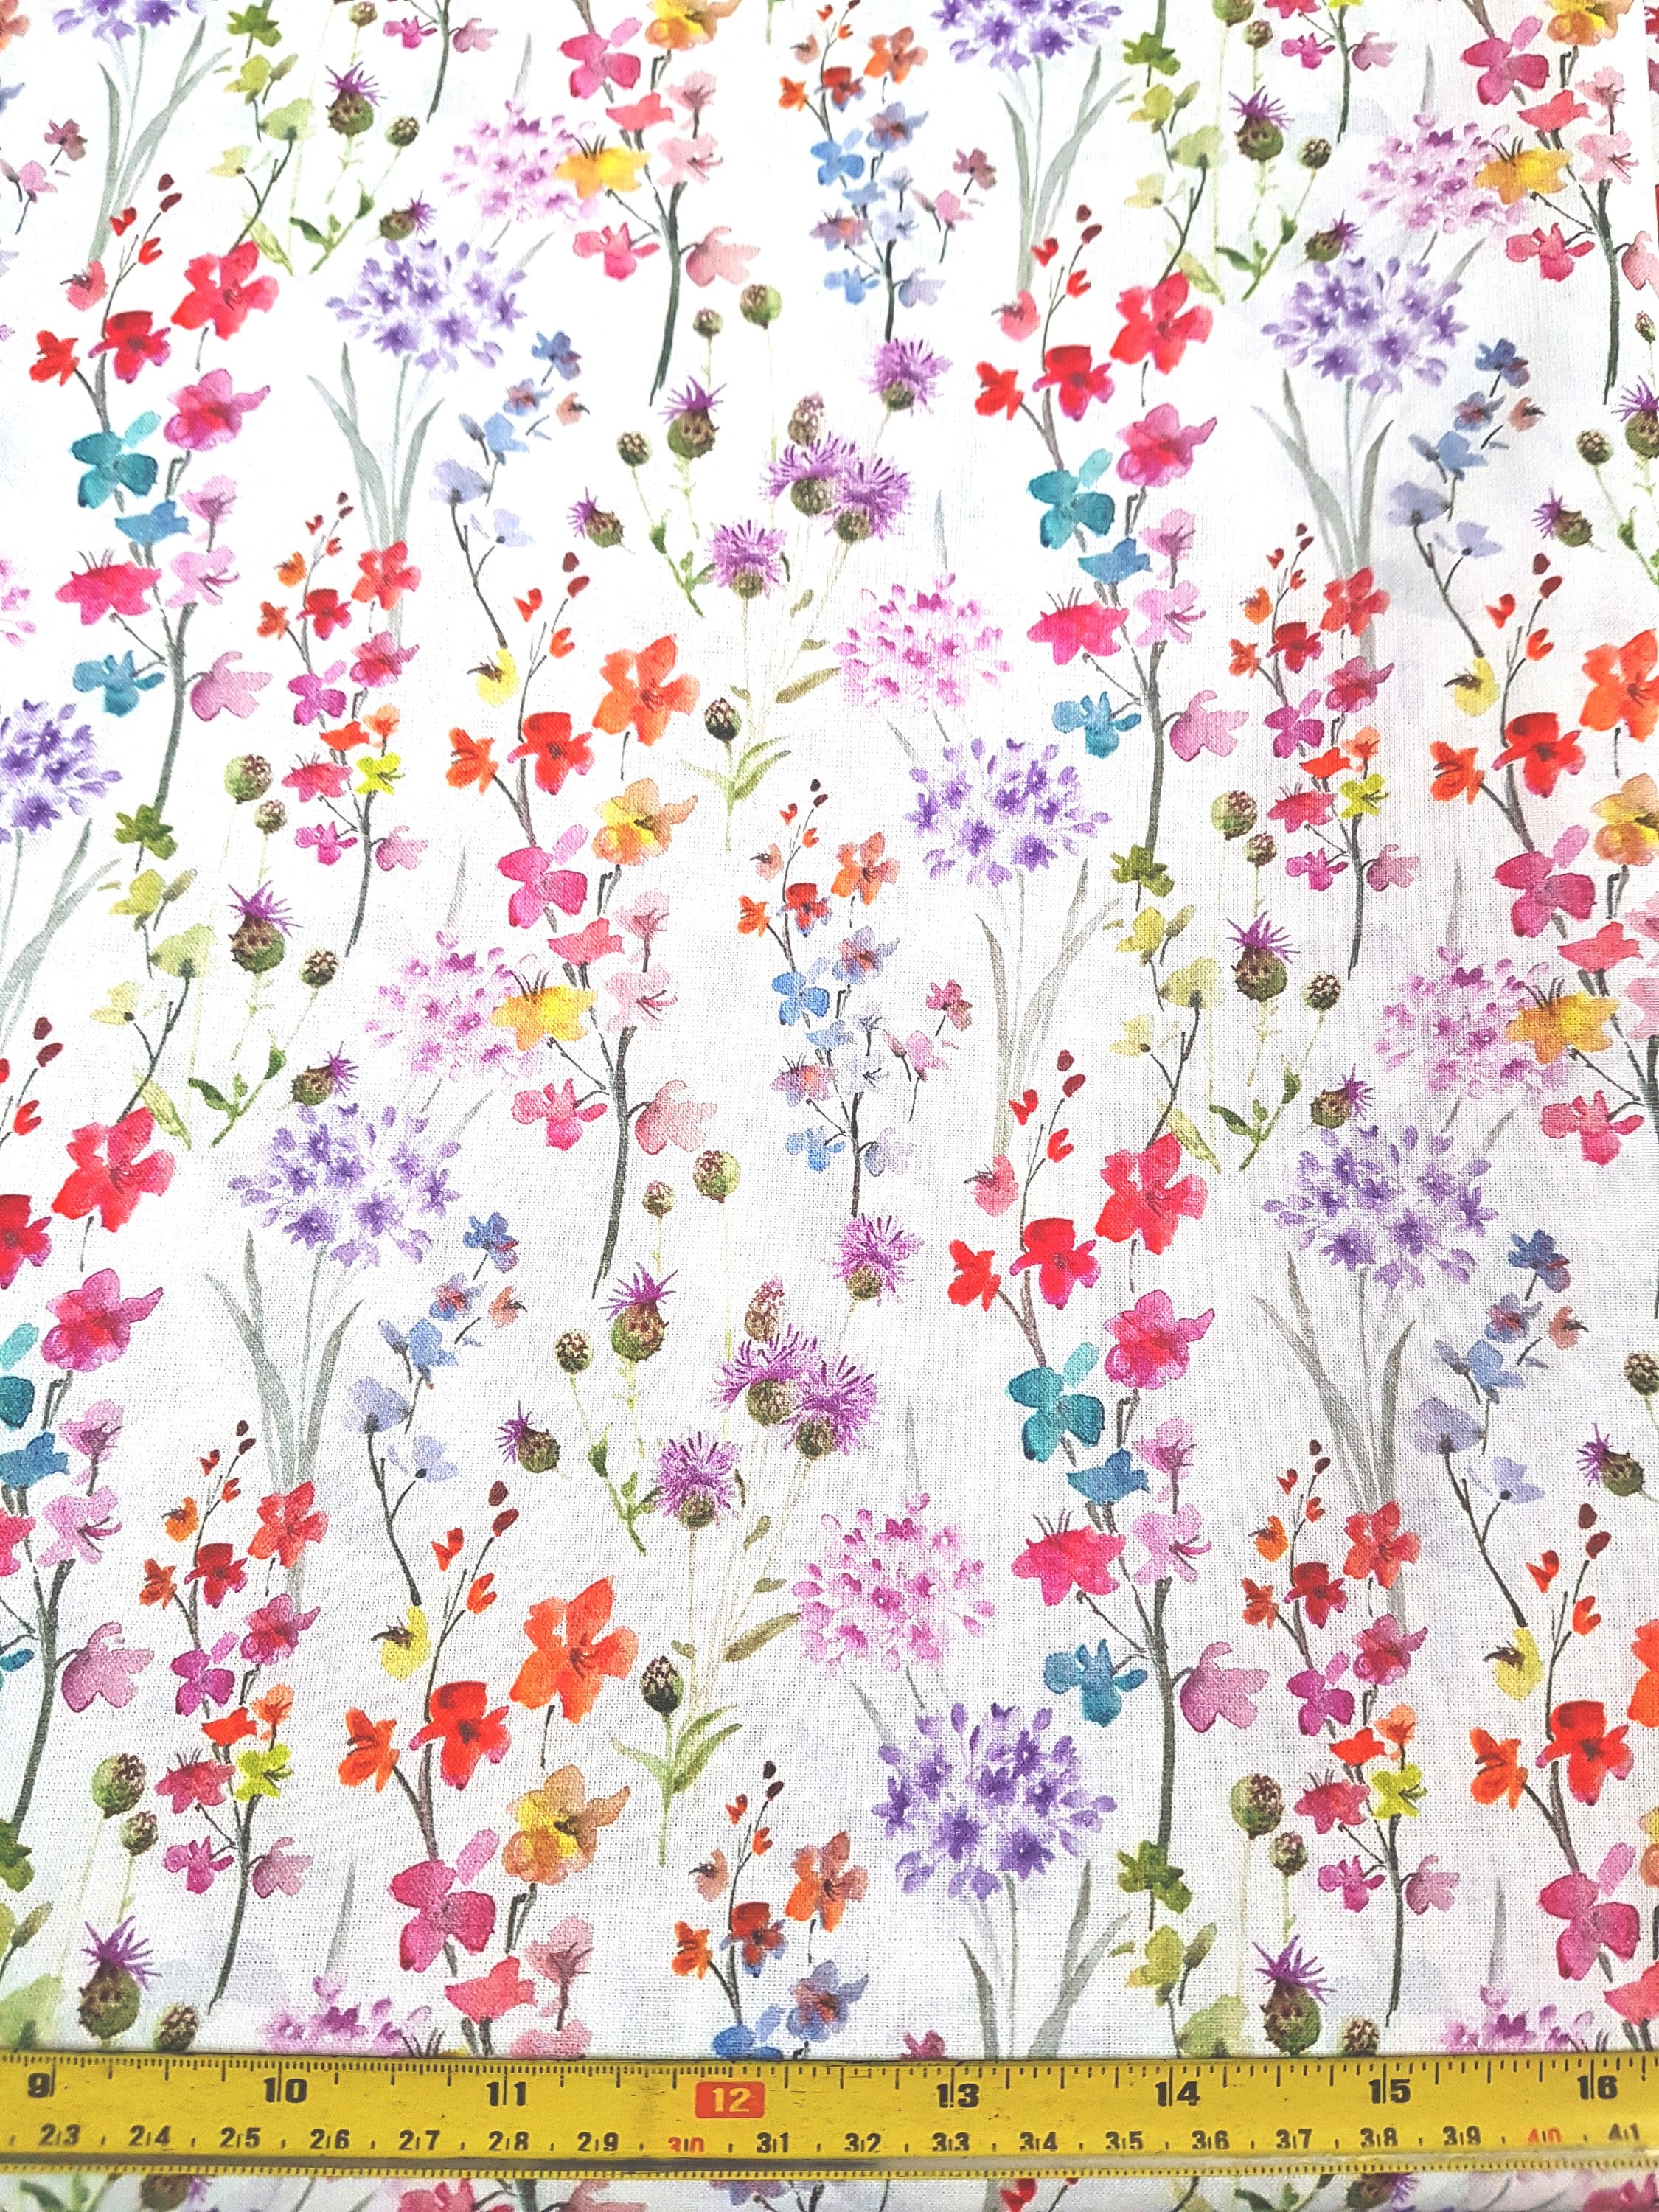 Watercolour field flowers Floral prints cotton 100% cotton | Etsy